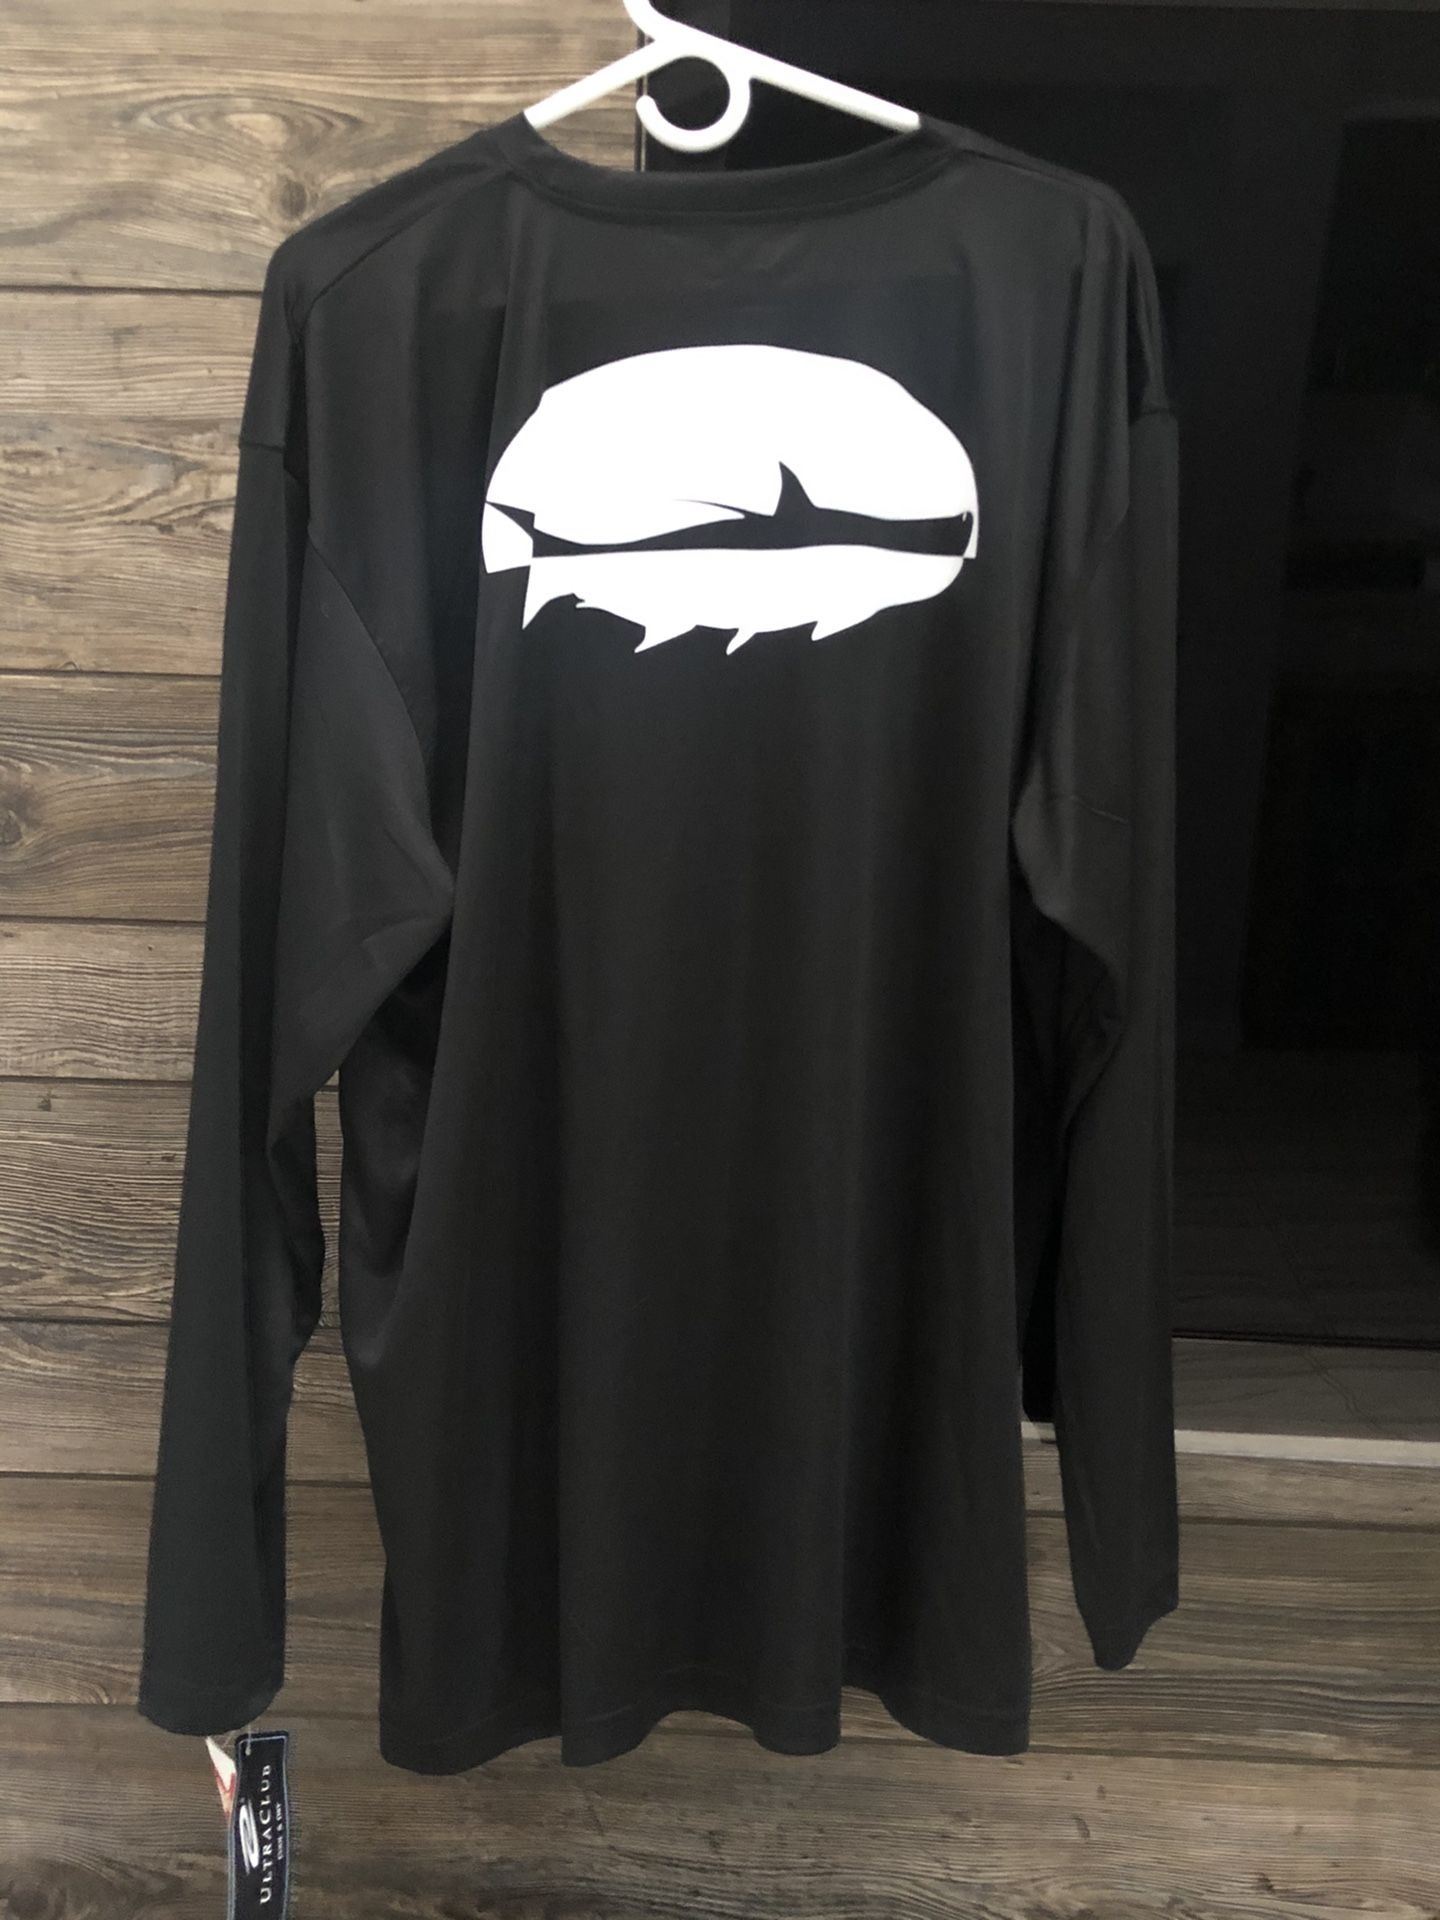 Tarpon spf50+ Fishing shirt xL